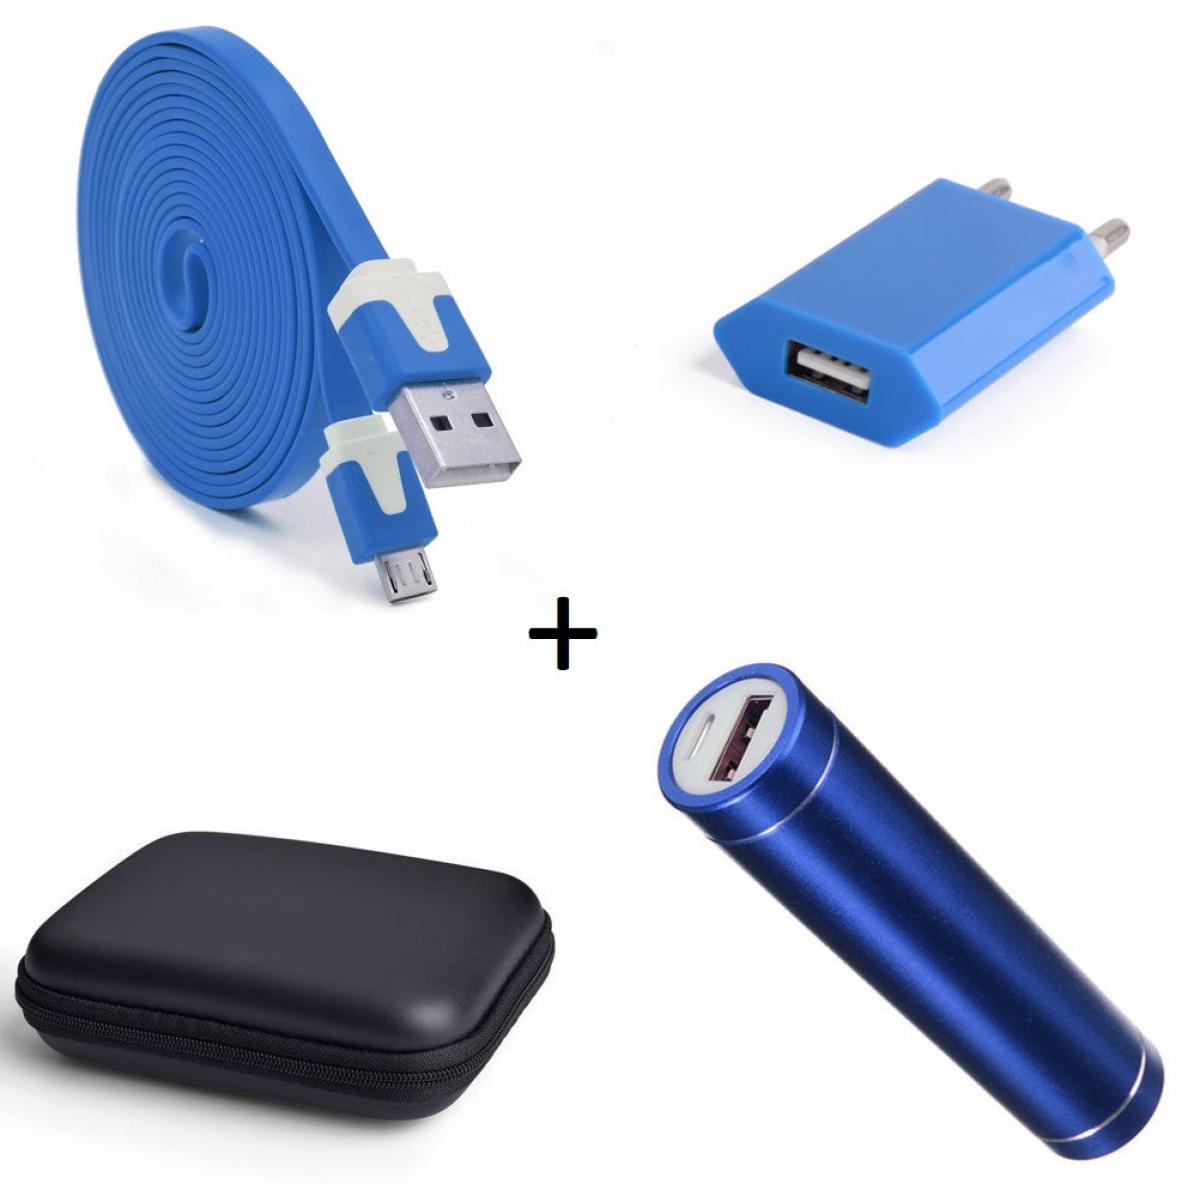 Shot - Pack pour WIKO View 3 (Cable Chargeur Noodle Micro USB + Pochette + Batterie + Prise Secteur) Android (BLEU) - Chargeur secteur téléphone